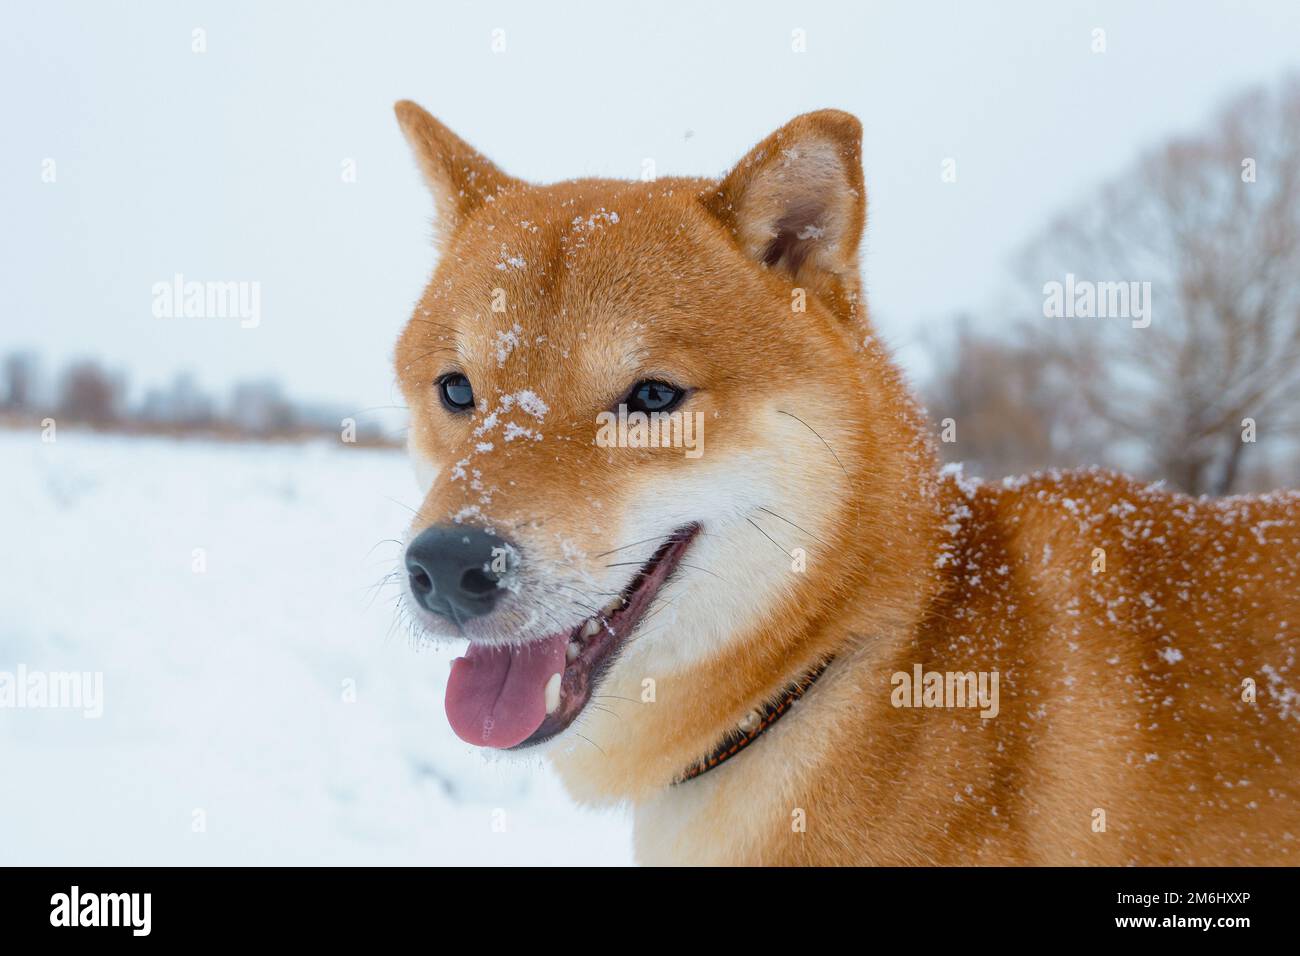 Il cane giapponese Shiba Inu gioca nella neve in inverno. Foto Stock